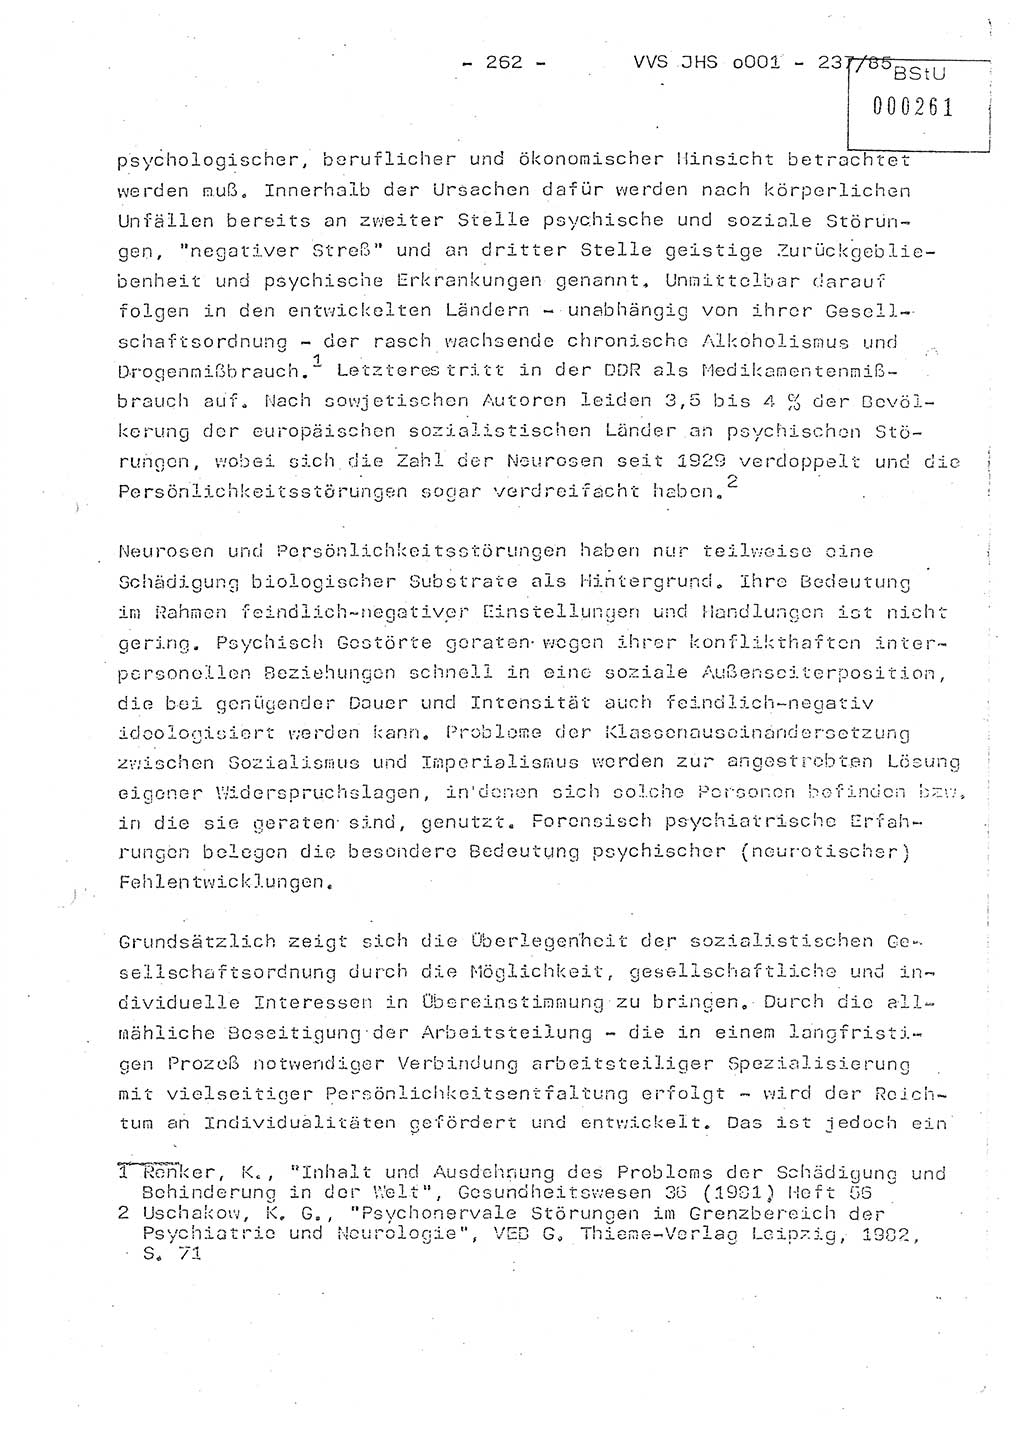 Dissertation Oberstleutnant Peter Jakulski (JHS), Oberstleutnat Christian Rudolph (HA Ⅸ), Major Horst Böttger (ZMD), Major Wolfgang Grüneberg (JHS), Major Albert Meutsch (JHS), Ministerium für Staatssicherheit (MfS) [Deutsche Demokratische Republik (DDR)], Juristische Hochschule (JHS), Vertrauliche Verschlußsache (VVS) o001-237/85, Potsdam 1985, Seite 262 (Diss. MfS DDR JHS VVS o001-237/85 1985, S. 262)